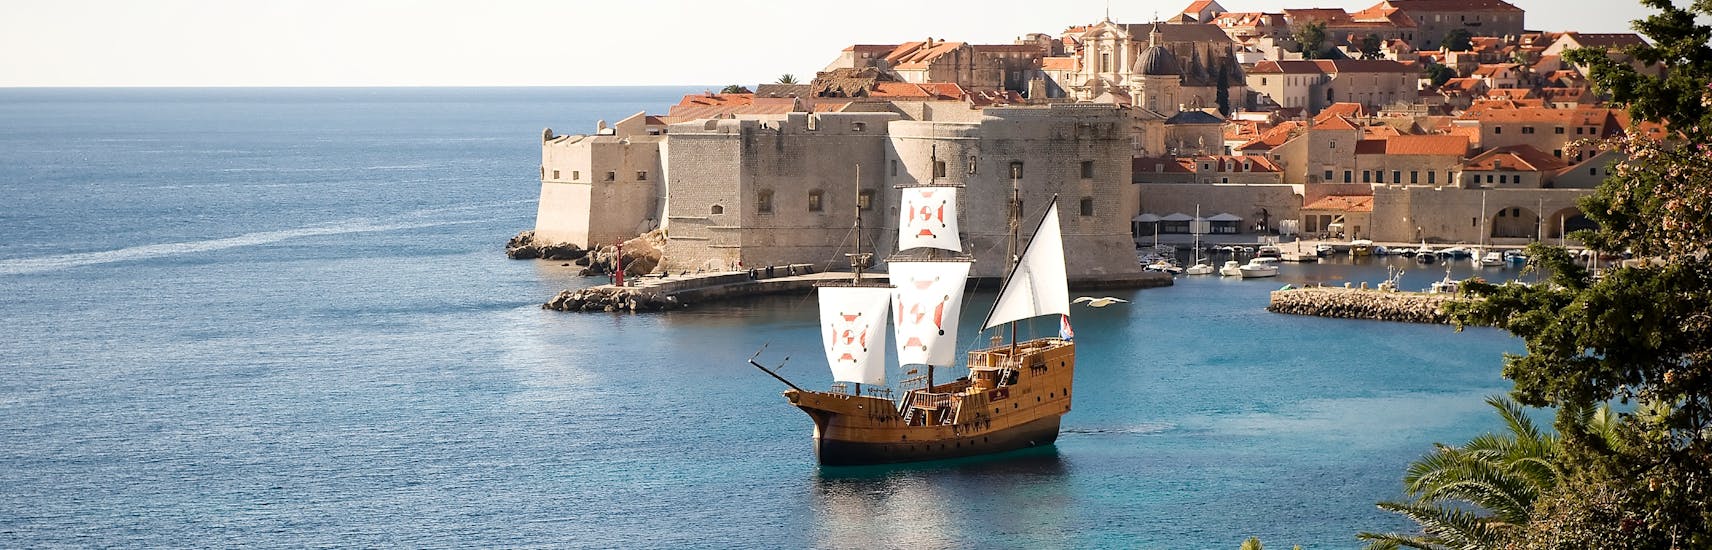 Das traditionelle Karaka-Schiff auf dem Wasser während der Bootstour um die Elaphiten-Inseln von Karaka Dubrovnik.